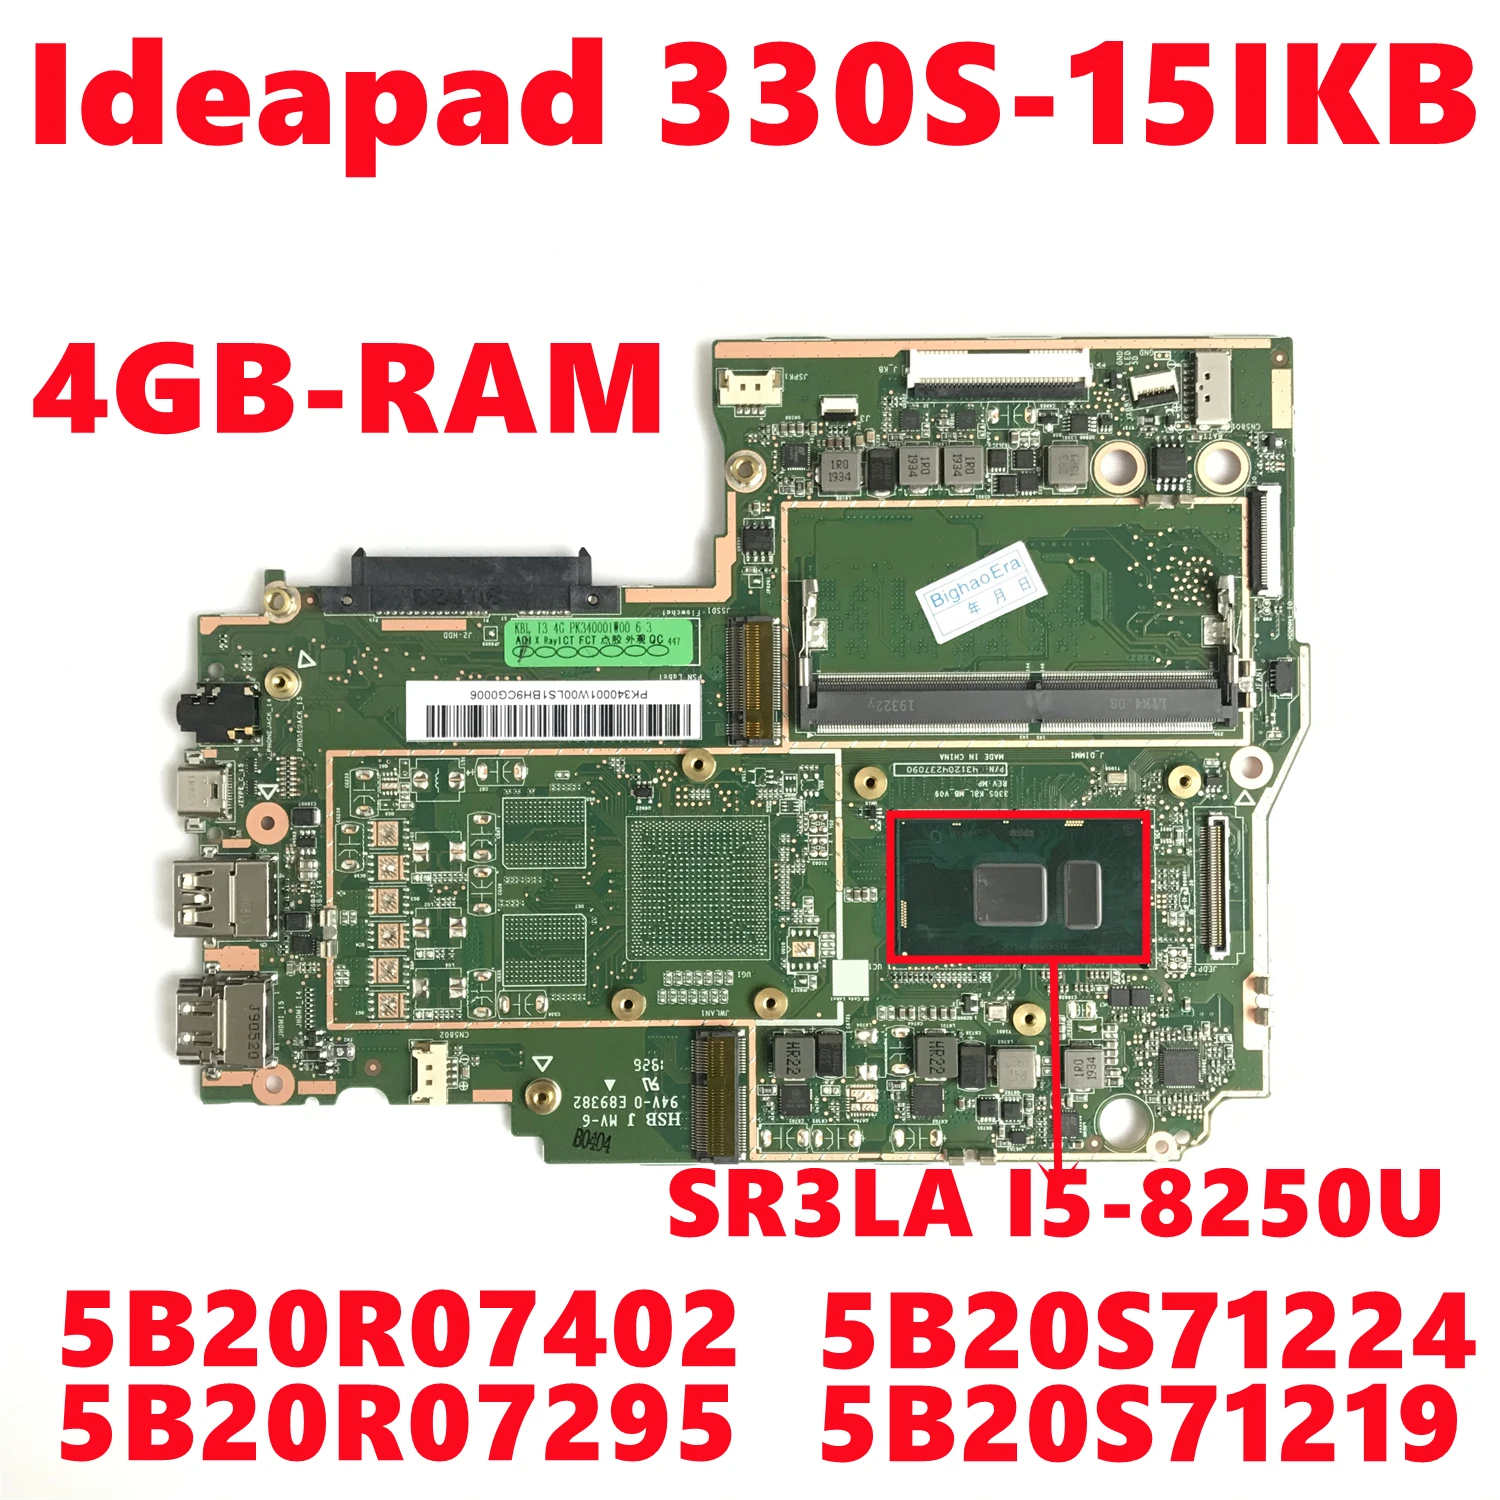 5B20S71219 5B20S71224 5B20R07295 5B20R07402 Lenovo Ideapad 330S-15IKB Laptop Anakart İ5-8250U 4GB DDR4 %100 % Test TAMAM